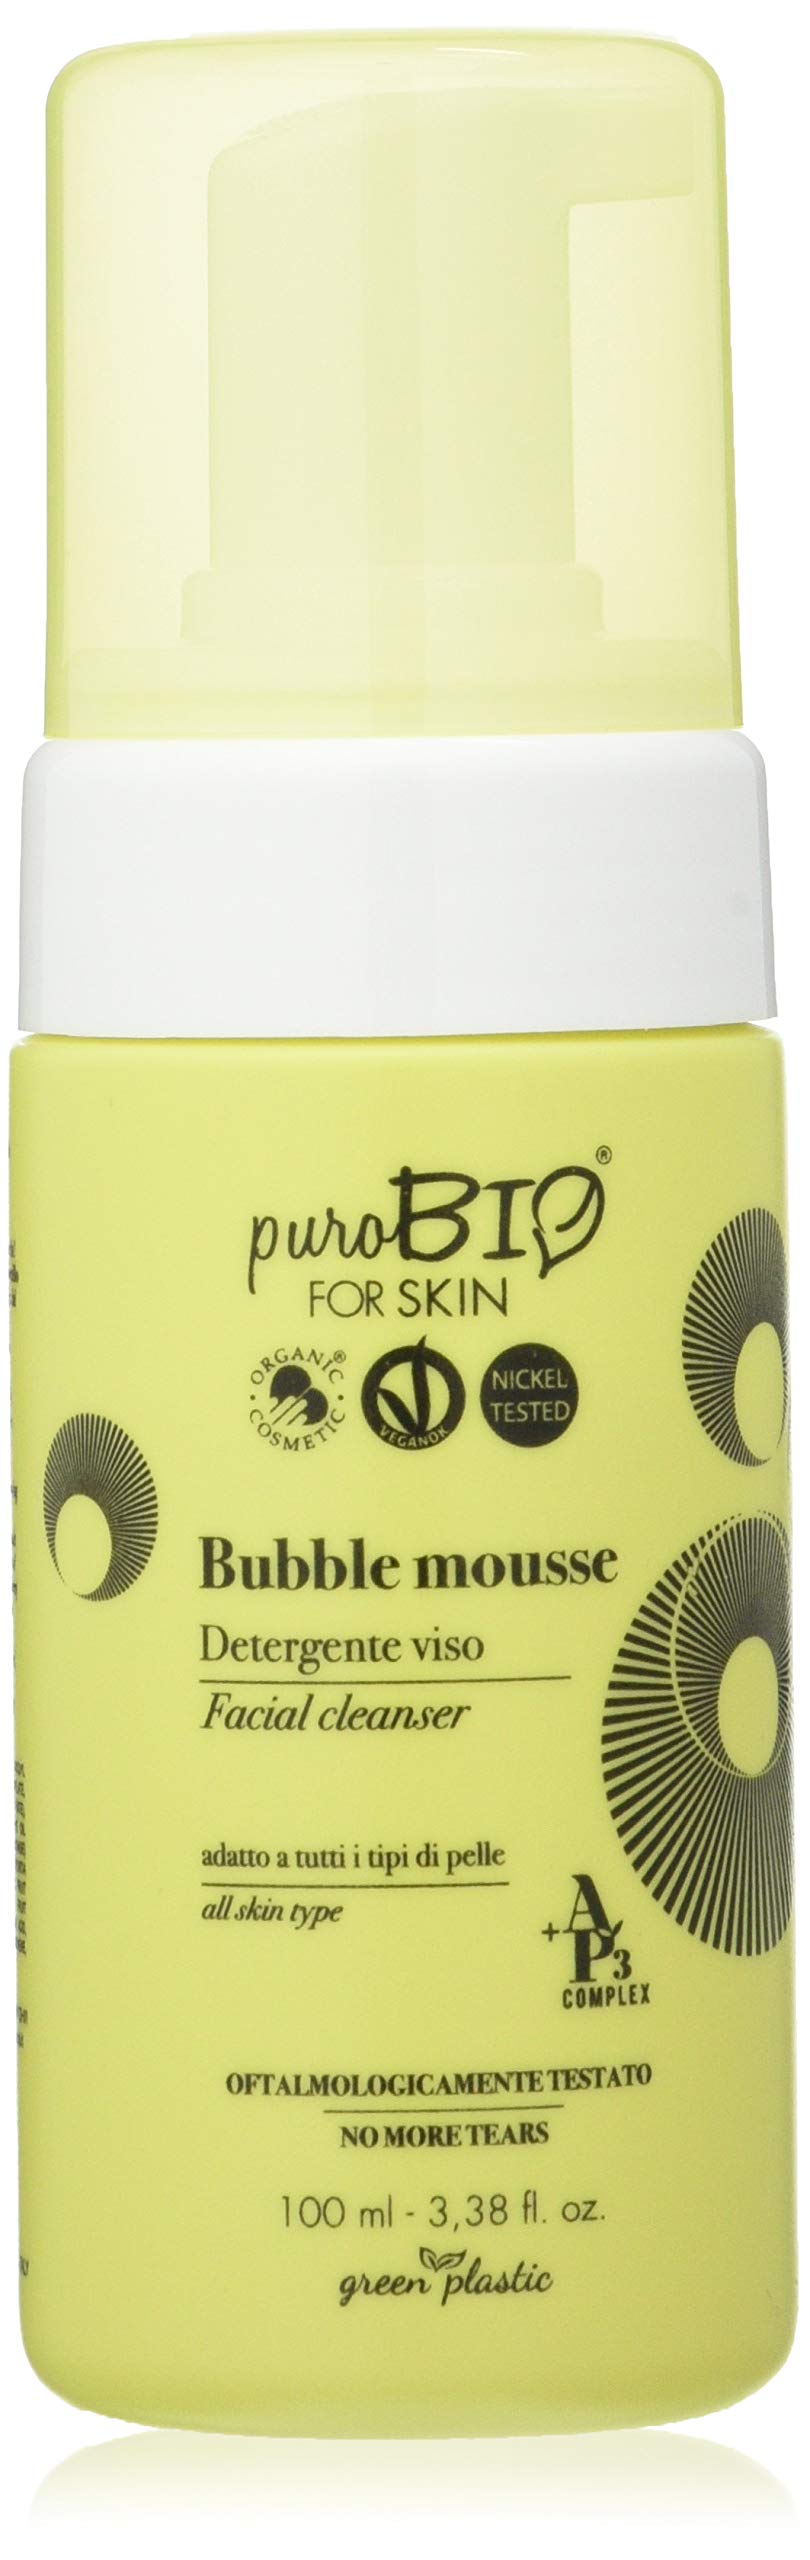 [Australia] - PuroBio Bubble Mousse Facial Cleanser,8051411363668 